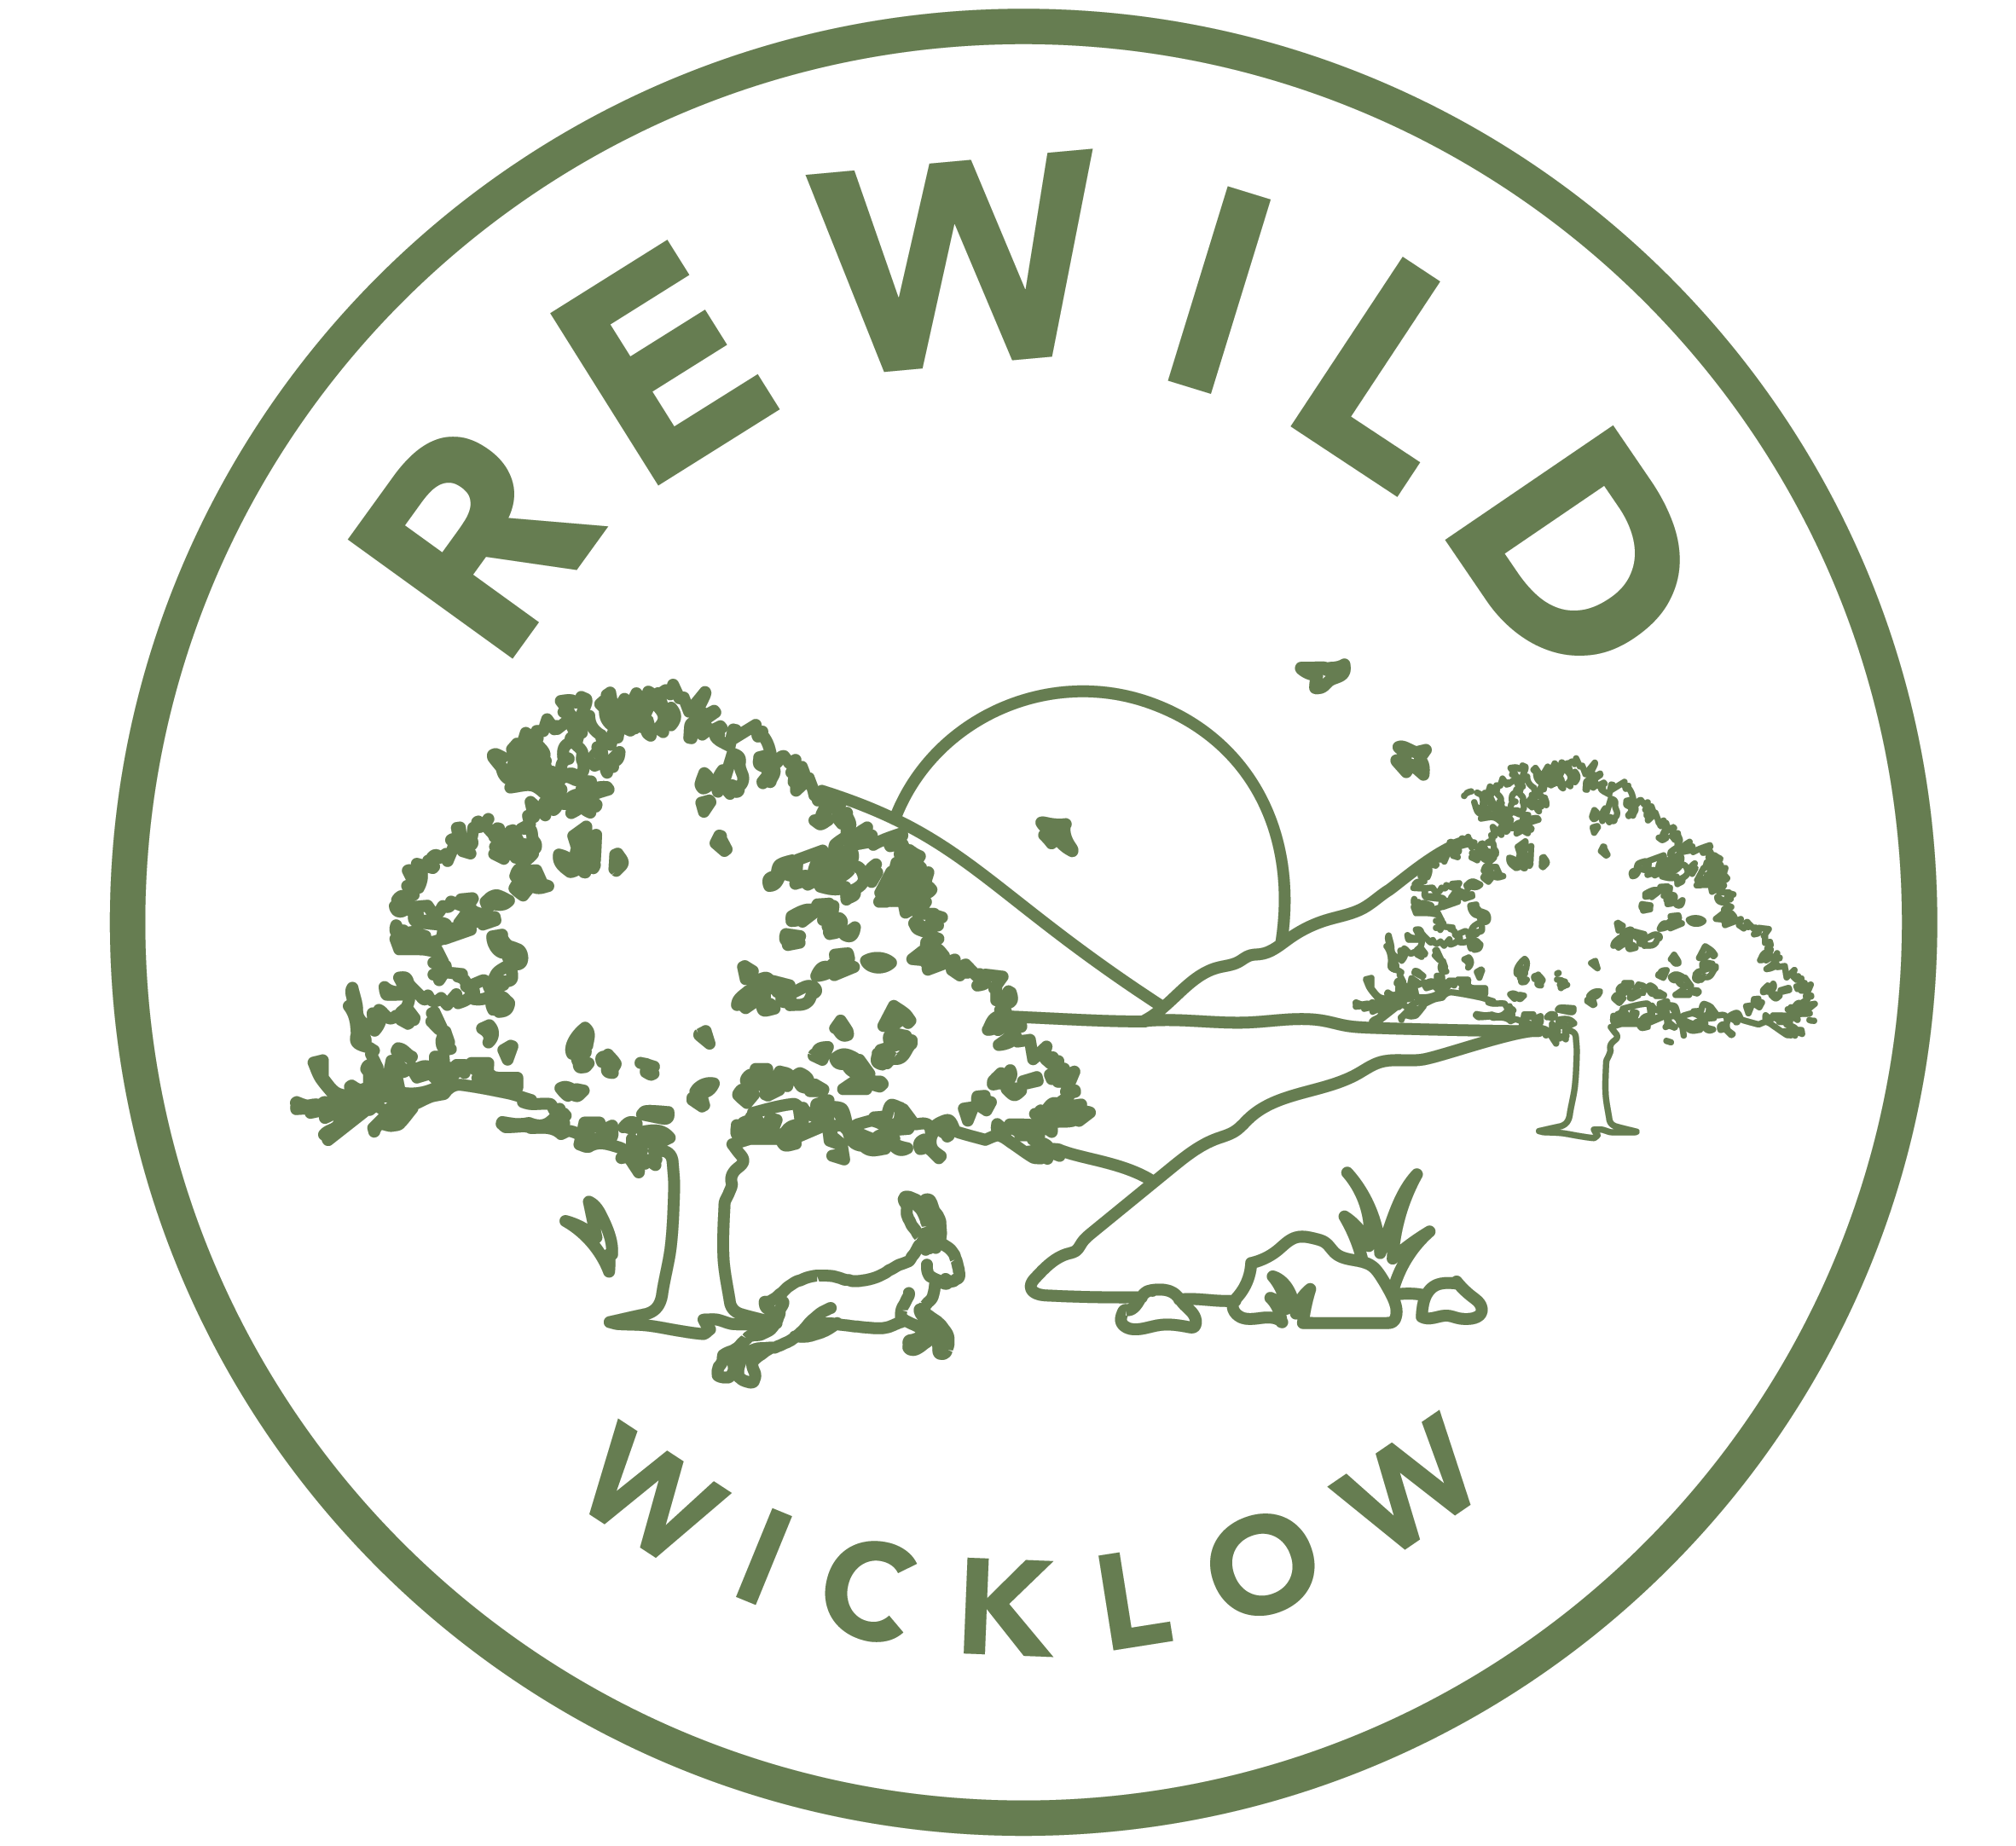 REWILD WICKLOW